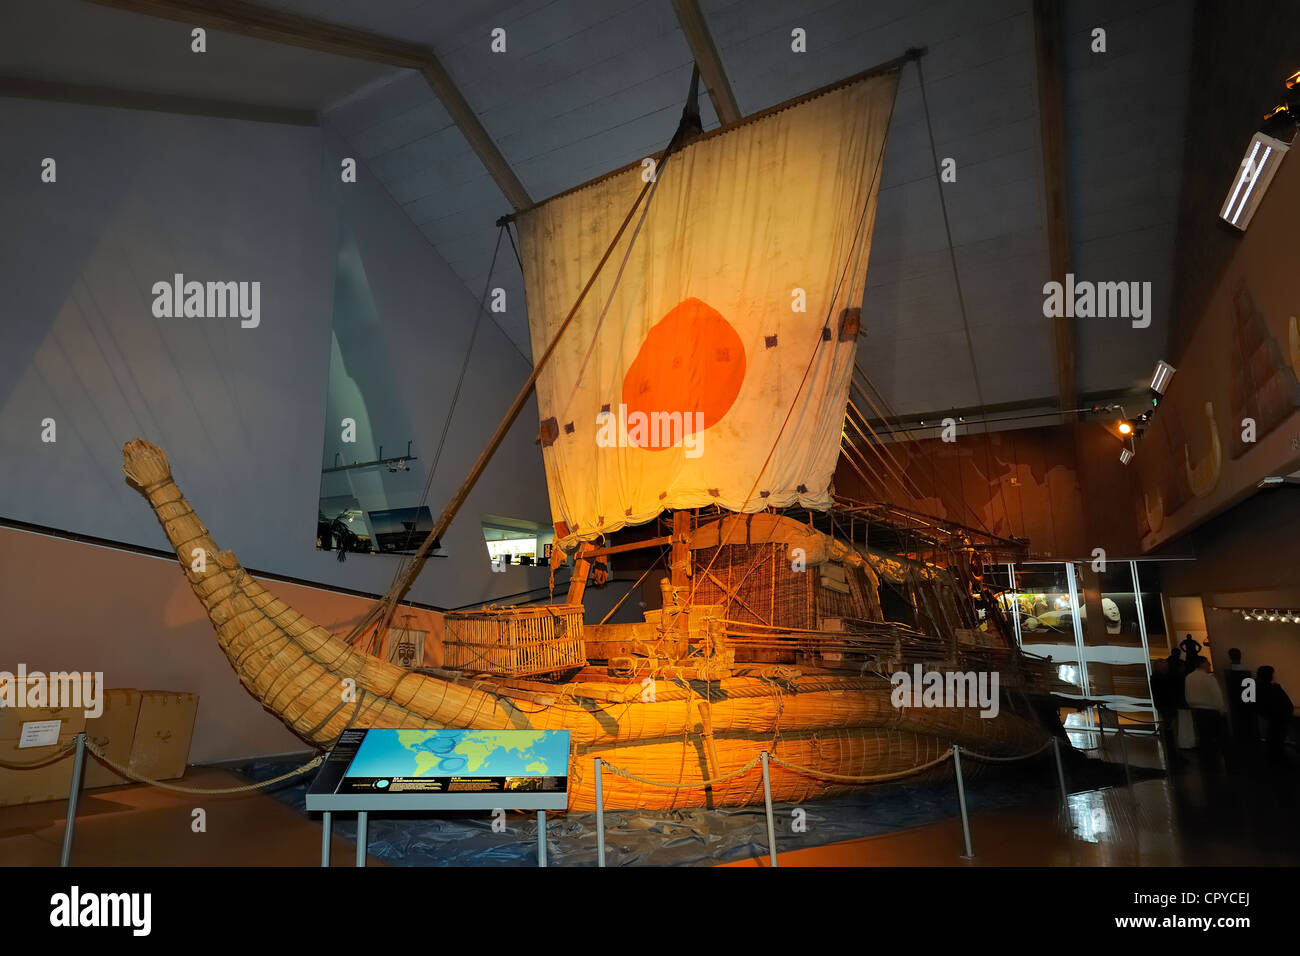 Norvège Oslo Bigdoy Musée Kon-Tiki Ra II navire de Thor Heyerdahl réplique de l'ancien bateau de papyrus égyptien avec lequel Banque D'Images